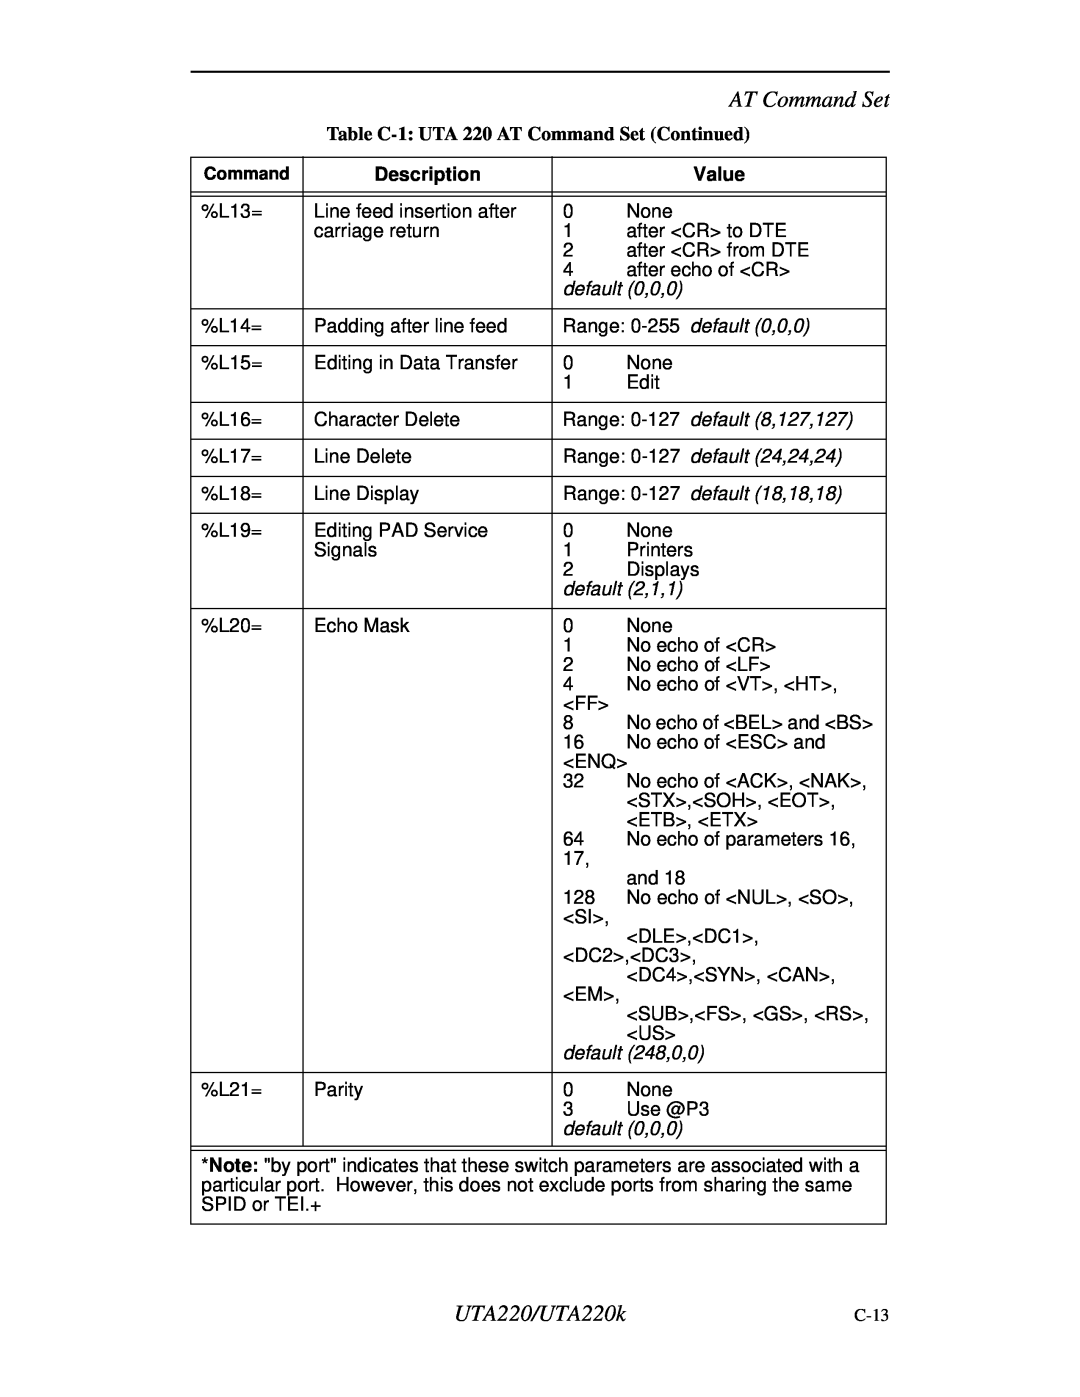 Northern UTA220/UTA220k manual AT Command Set, Description, Value, C-13 